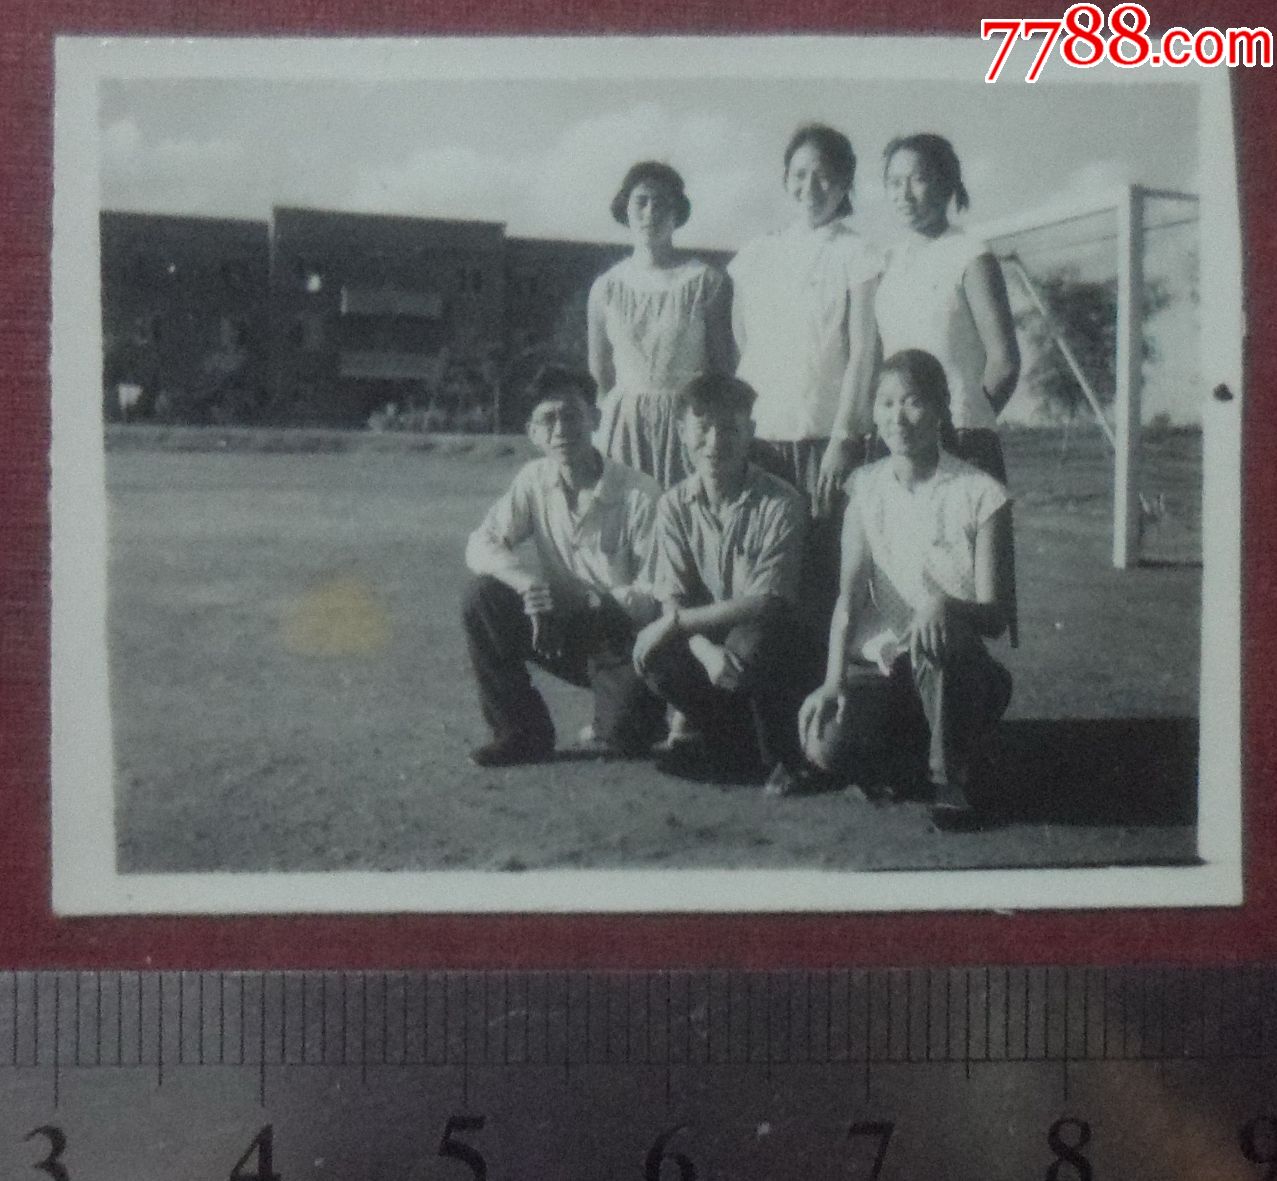 沈阳体育学院足球场,65级同学,1962年